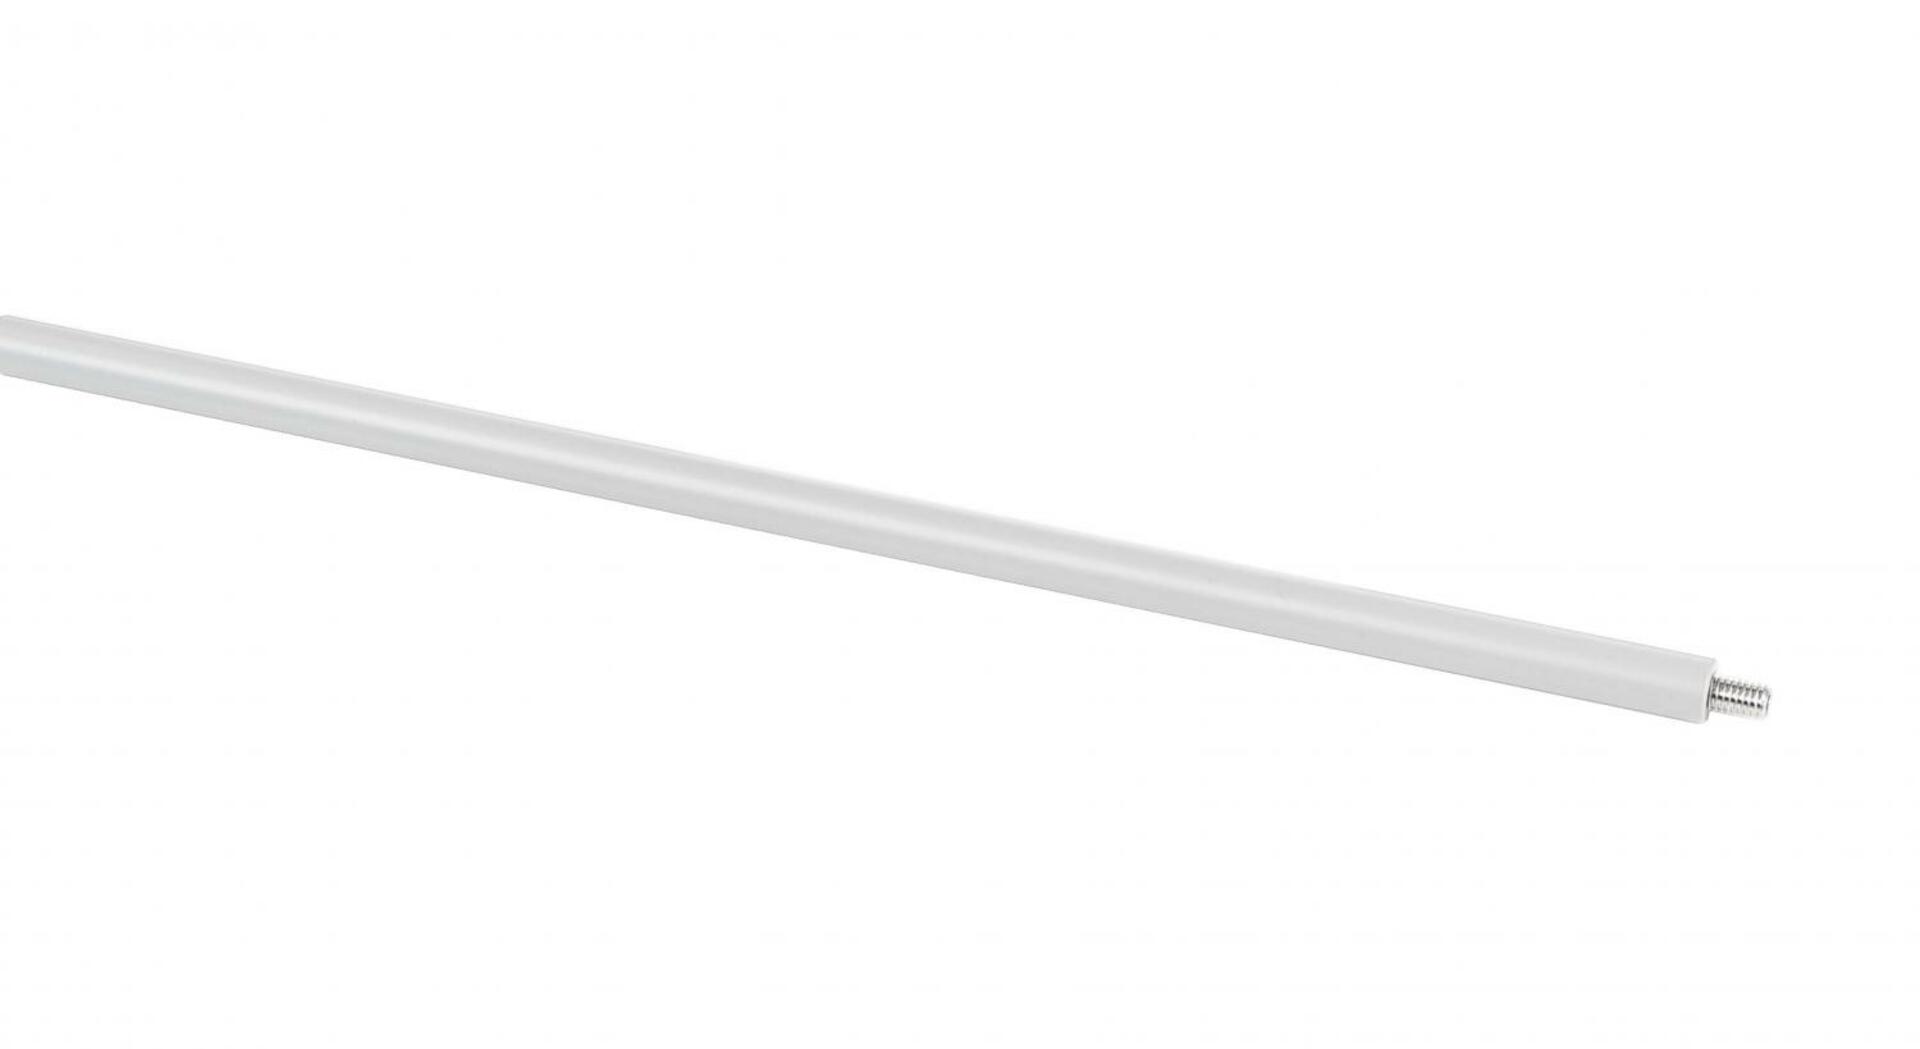 Light Impressions Deko-Light prodloužení pro závěs (30cm) pro 3-fázový svítidla D Line bílá  710086